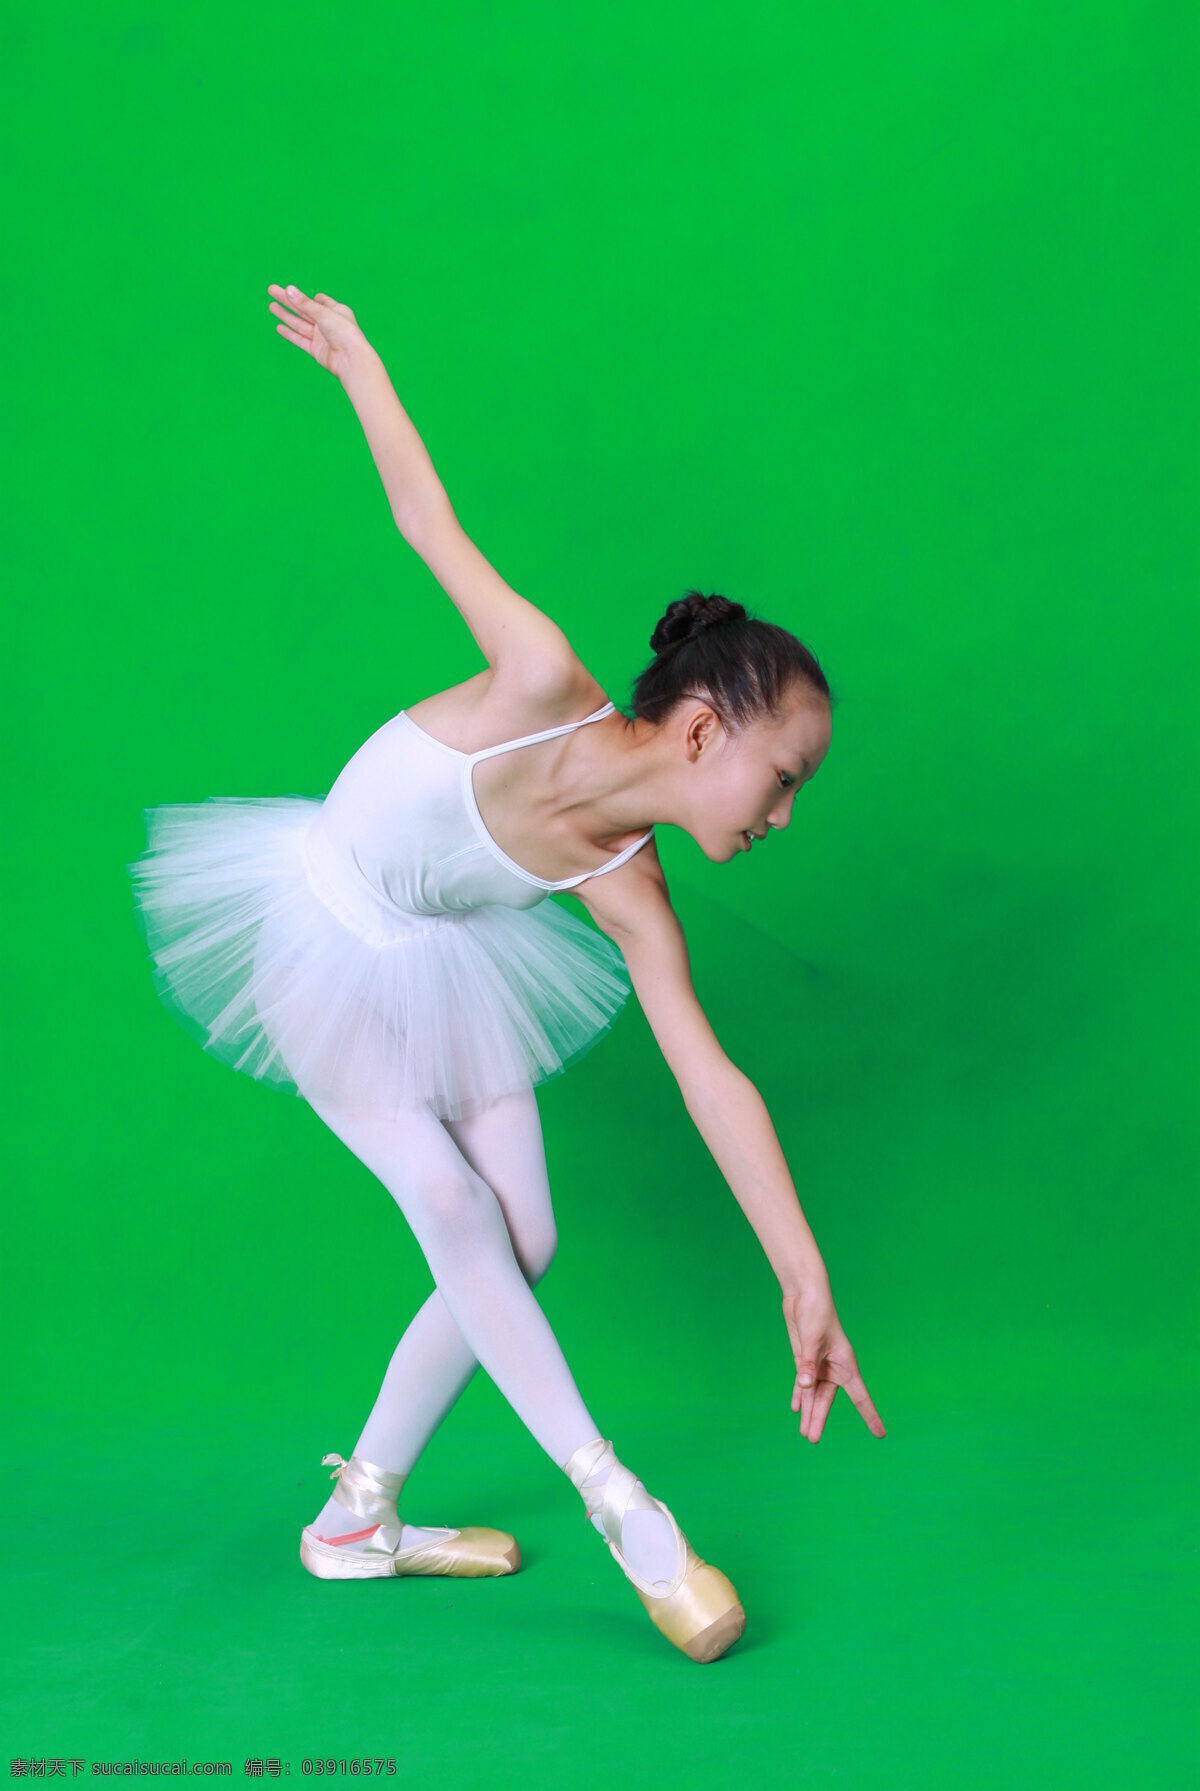 舞蹈女孩 舞蹈 女孩 写真 练功 艺术 儿童 人物图库 人物摄影